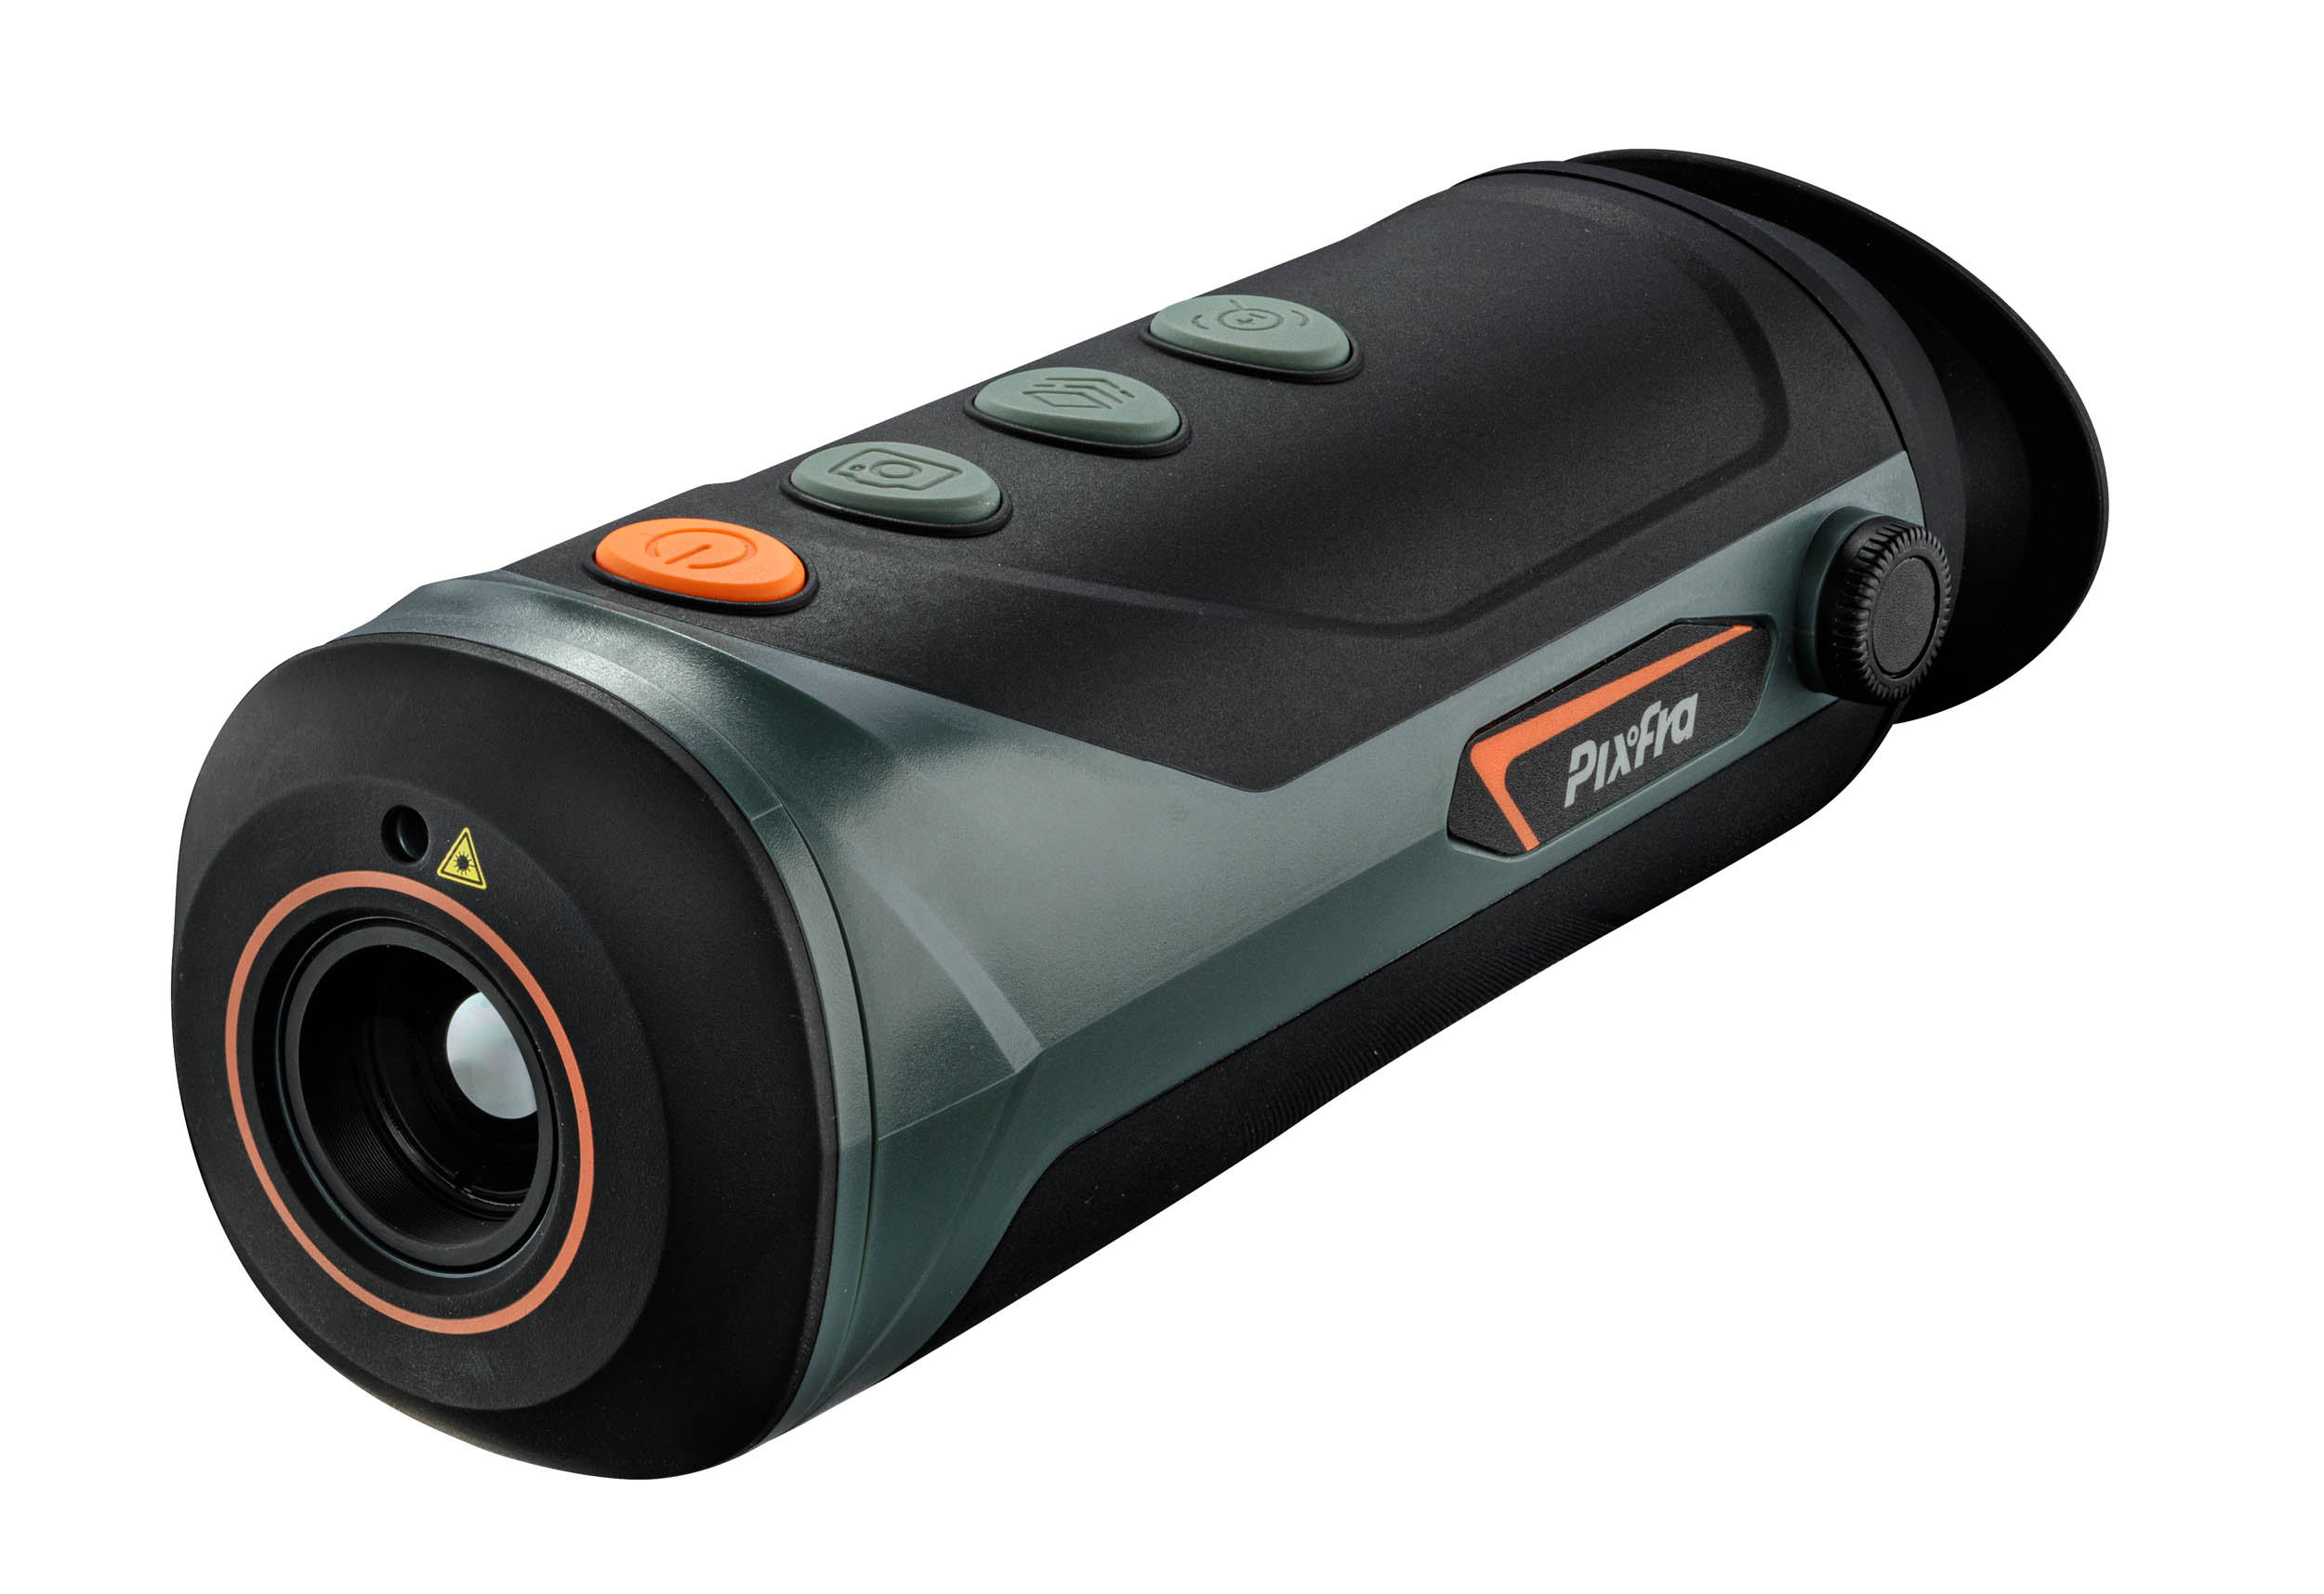 Pixfra M60 Monokulare Wärmebildkamera 25mm Brennweite mit 180m Laser und 1240m Erfassungsbereich